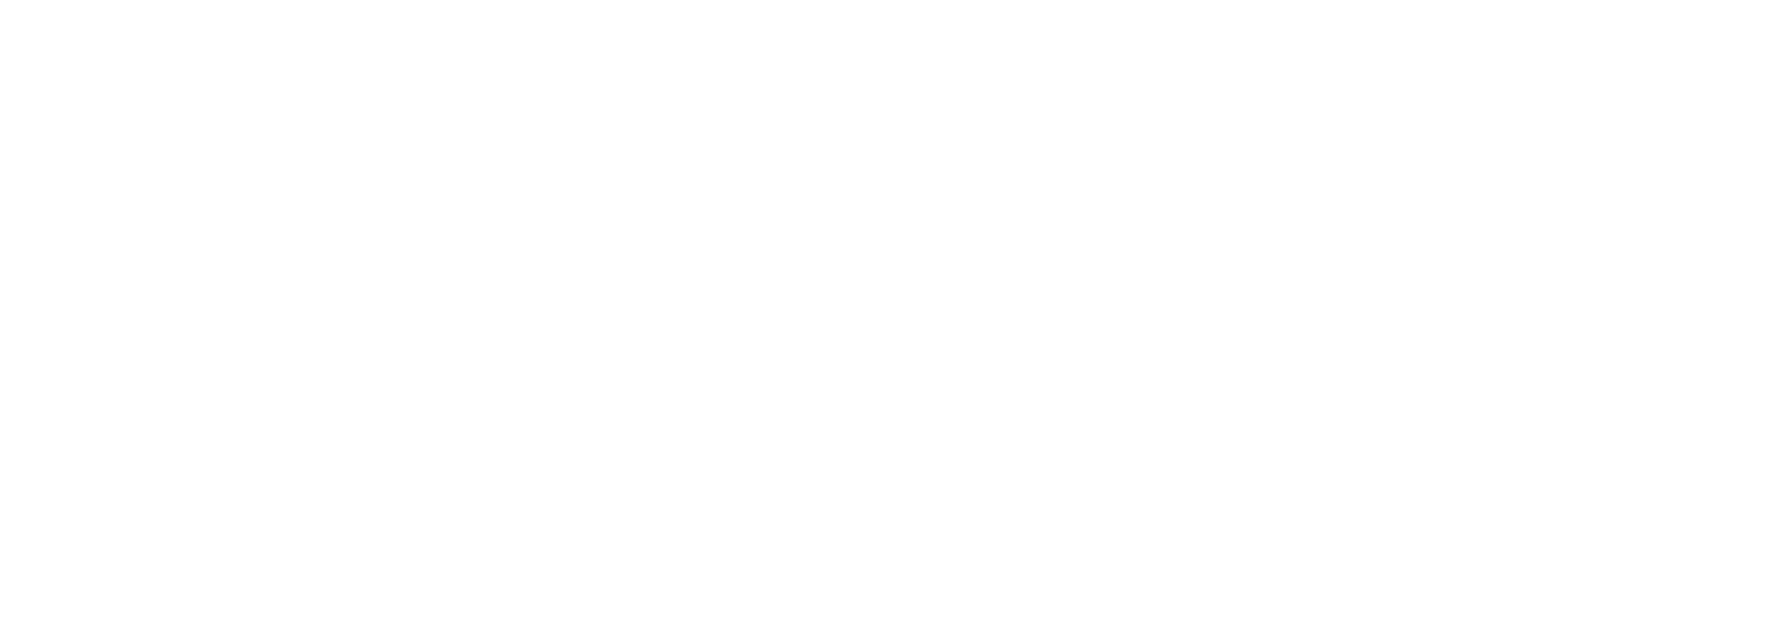 100% Optical 2025